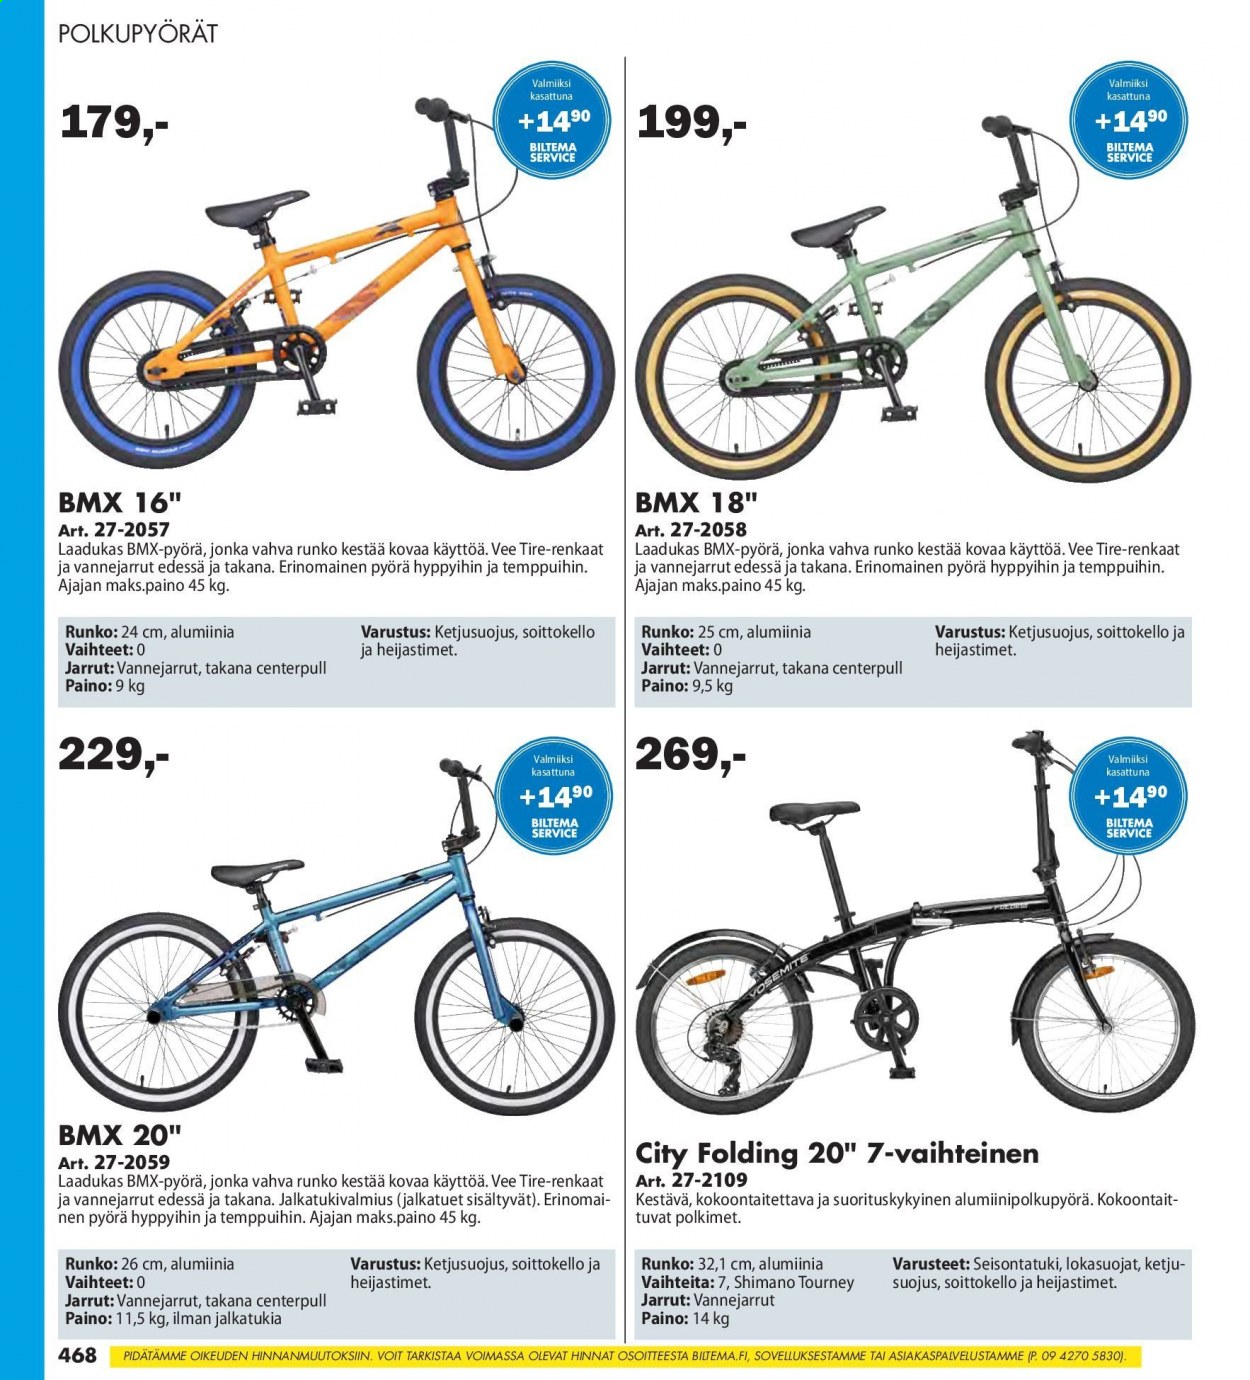 Biltema tarjoukset  - Tarjoustuotteet - polkupyörät, pyörä, renkaat, shimano. Sivu 468.